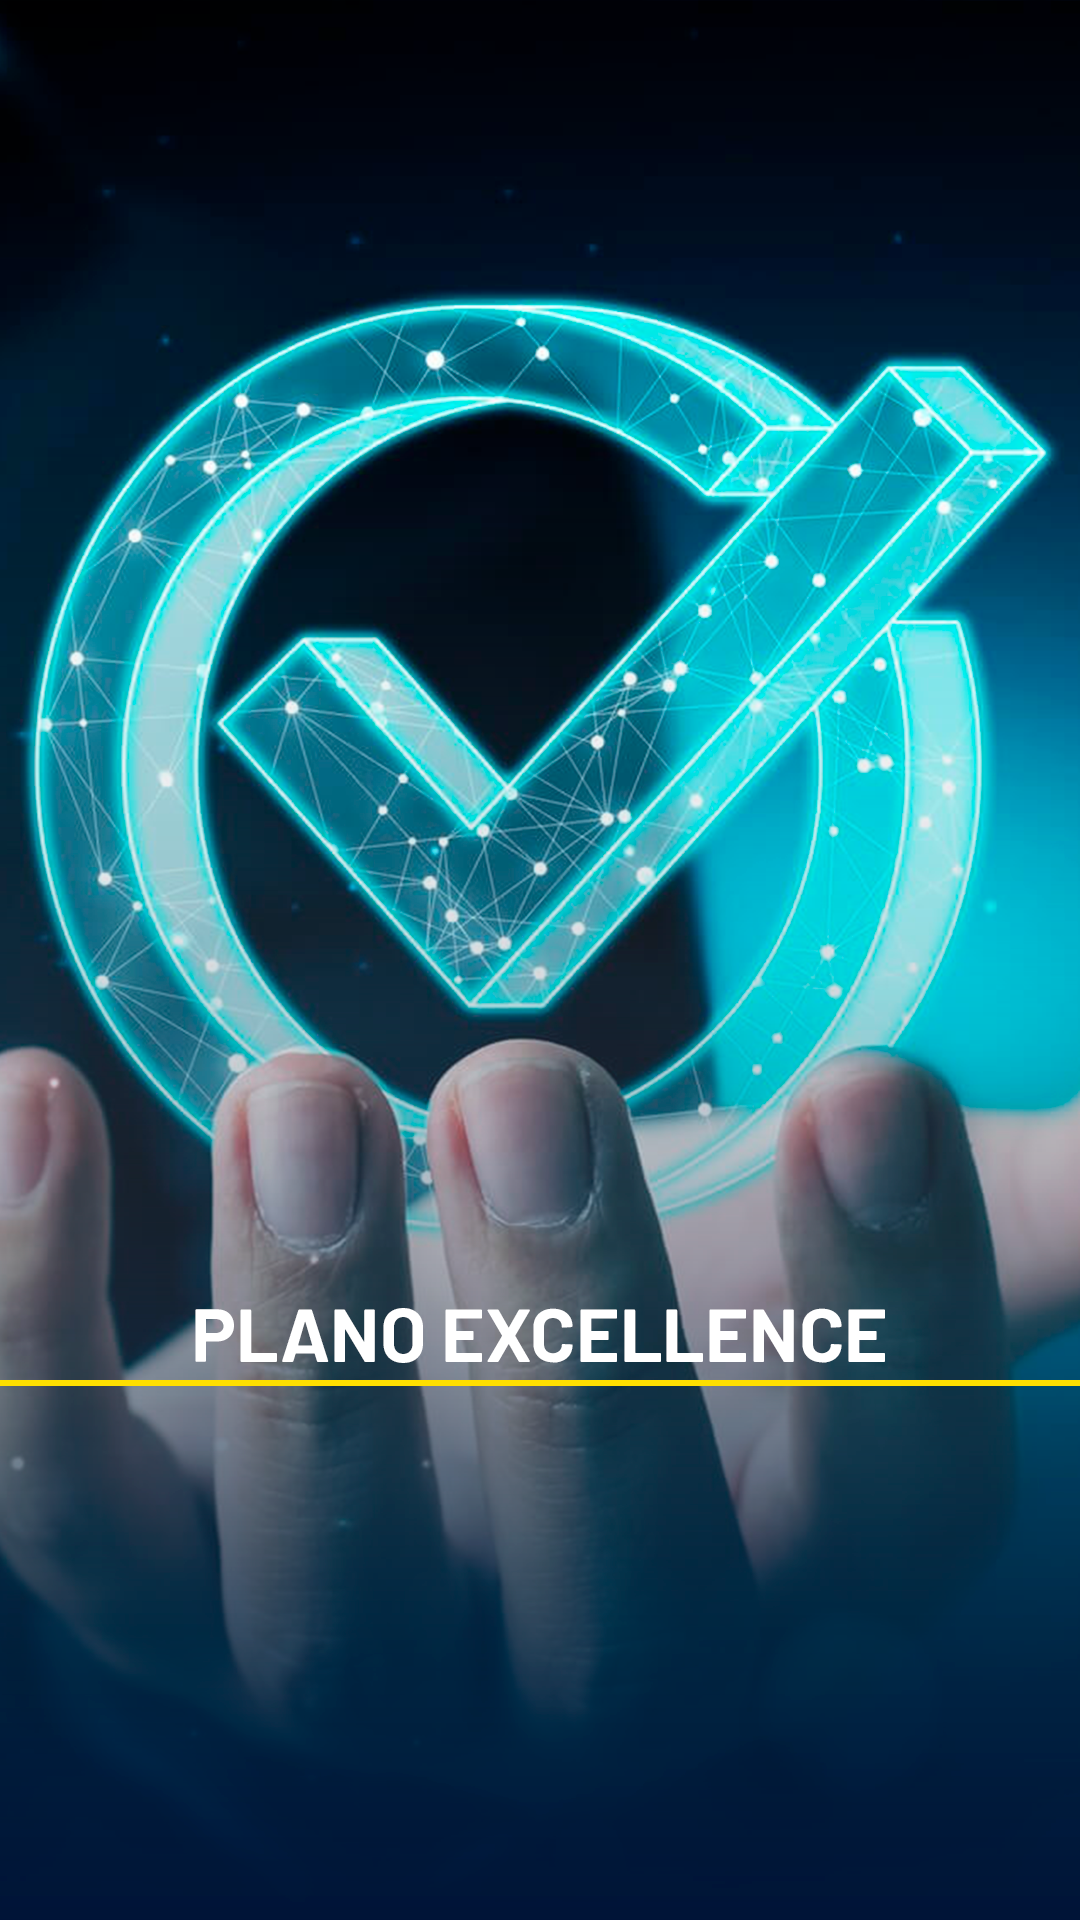 cartao-plano-excellence2-1